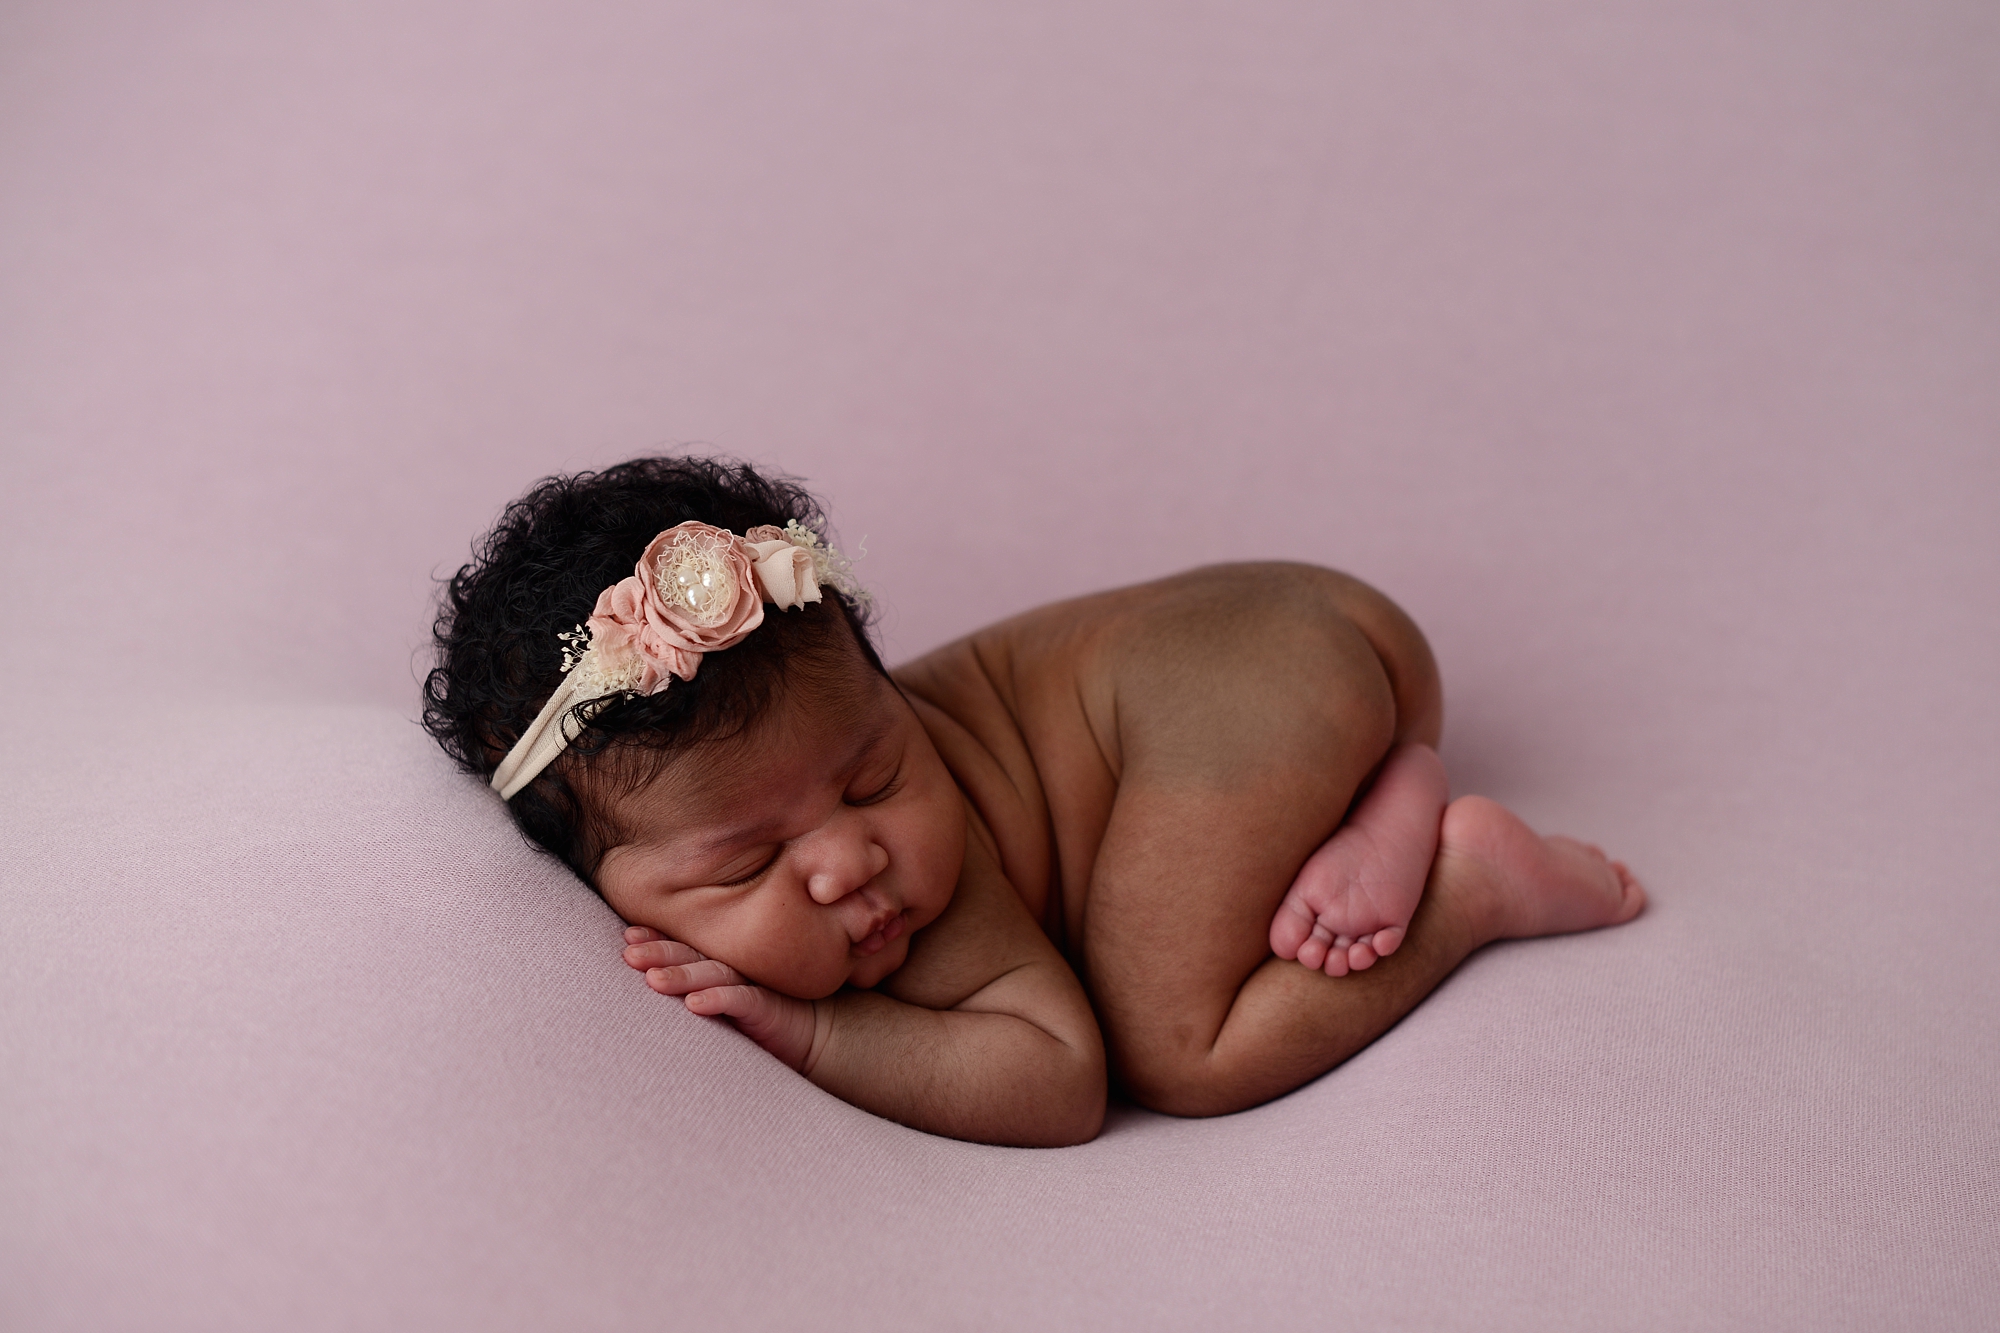 newborn baby photographers